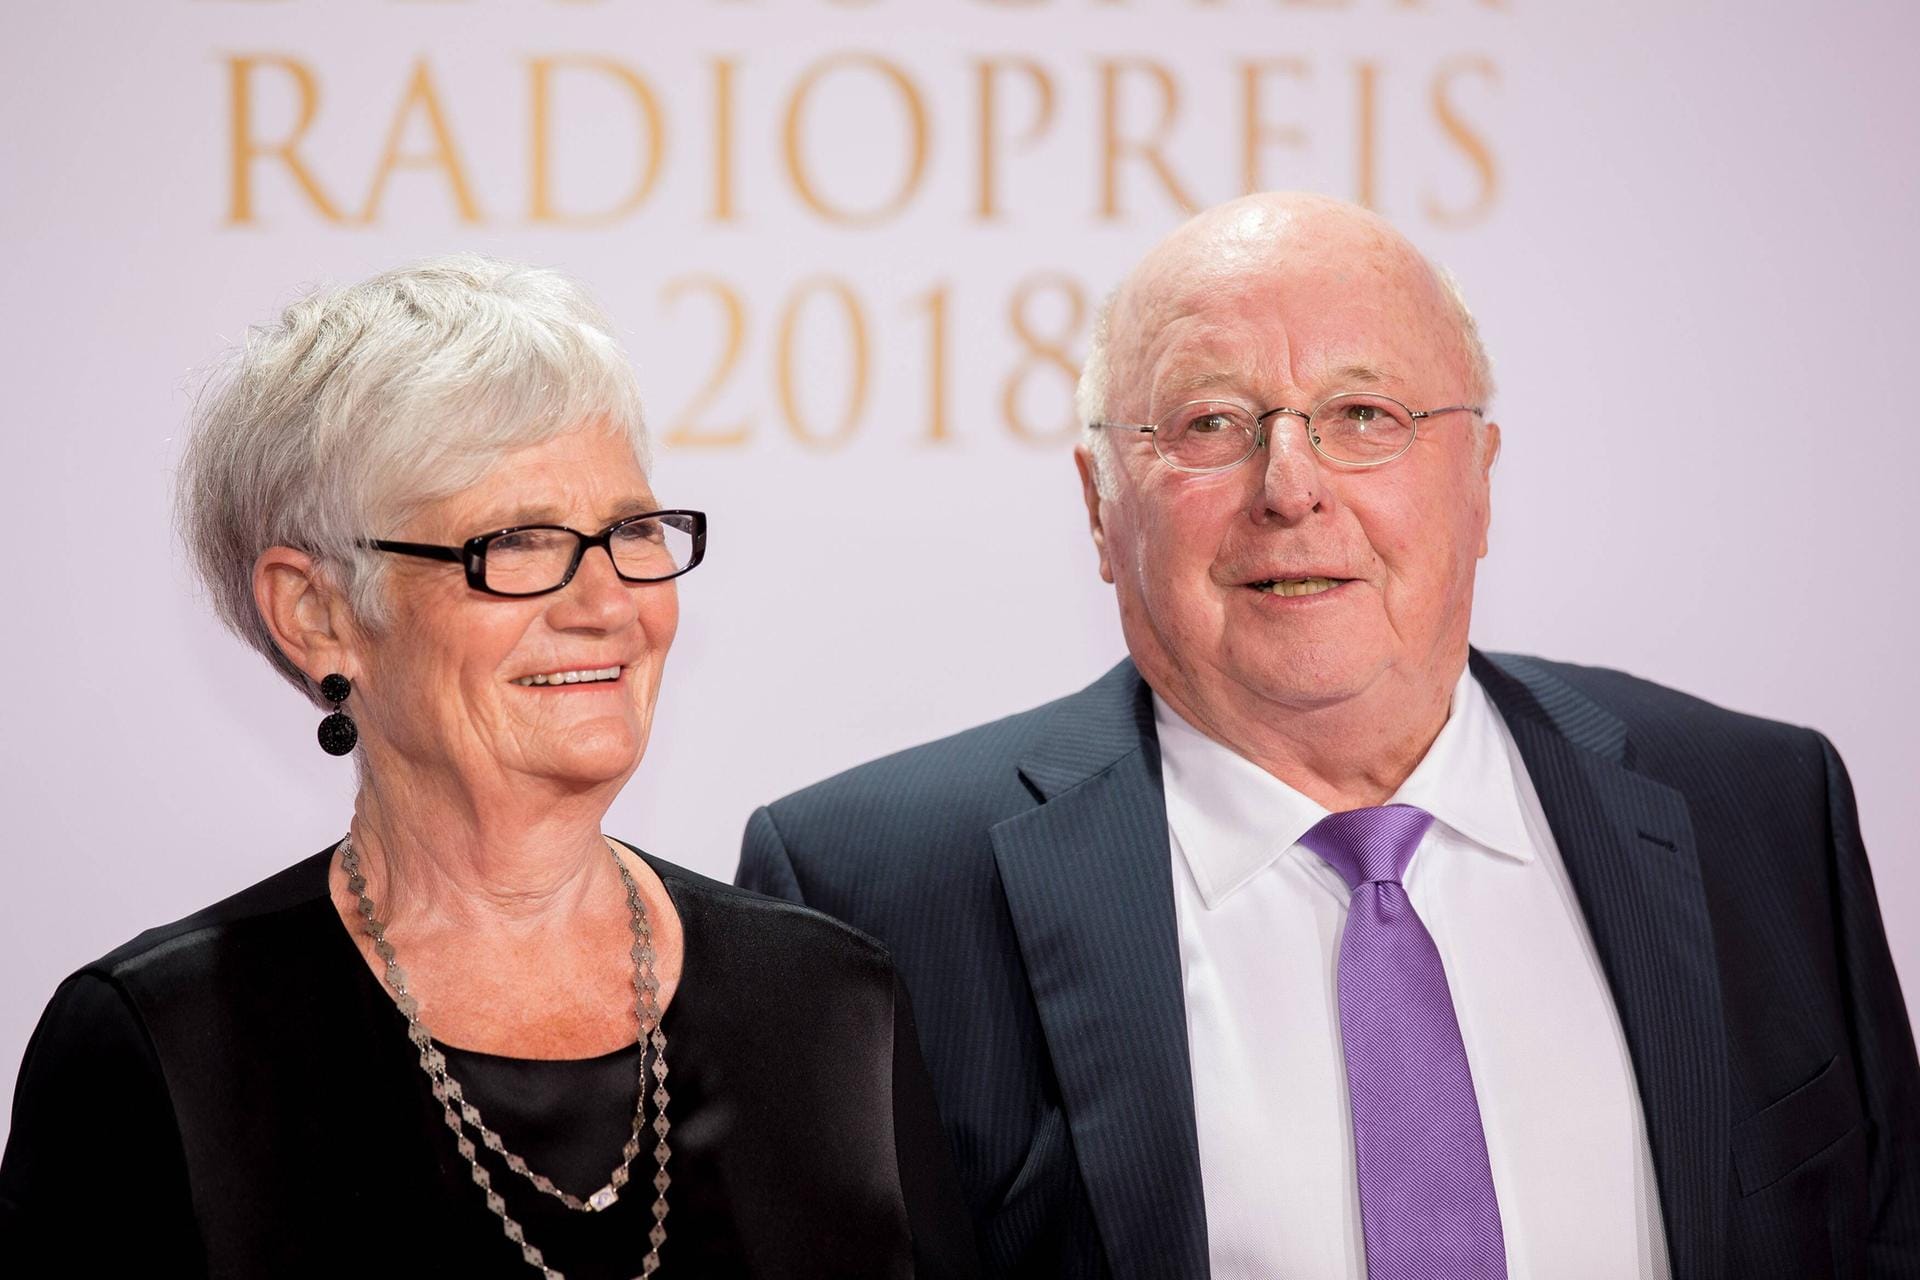 Marita und Norbert Blüm beim Deutschen Radiopreis 2018: Bei einer Ansprache beklagte sich Blüm über das Erstarken des Rechtsradikalismus. Bis ins hohe Alter trat er in der Öffentlichkeit auf.